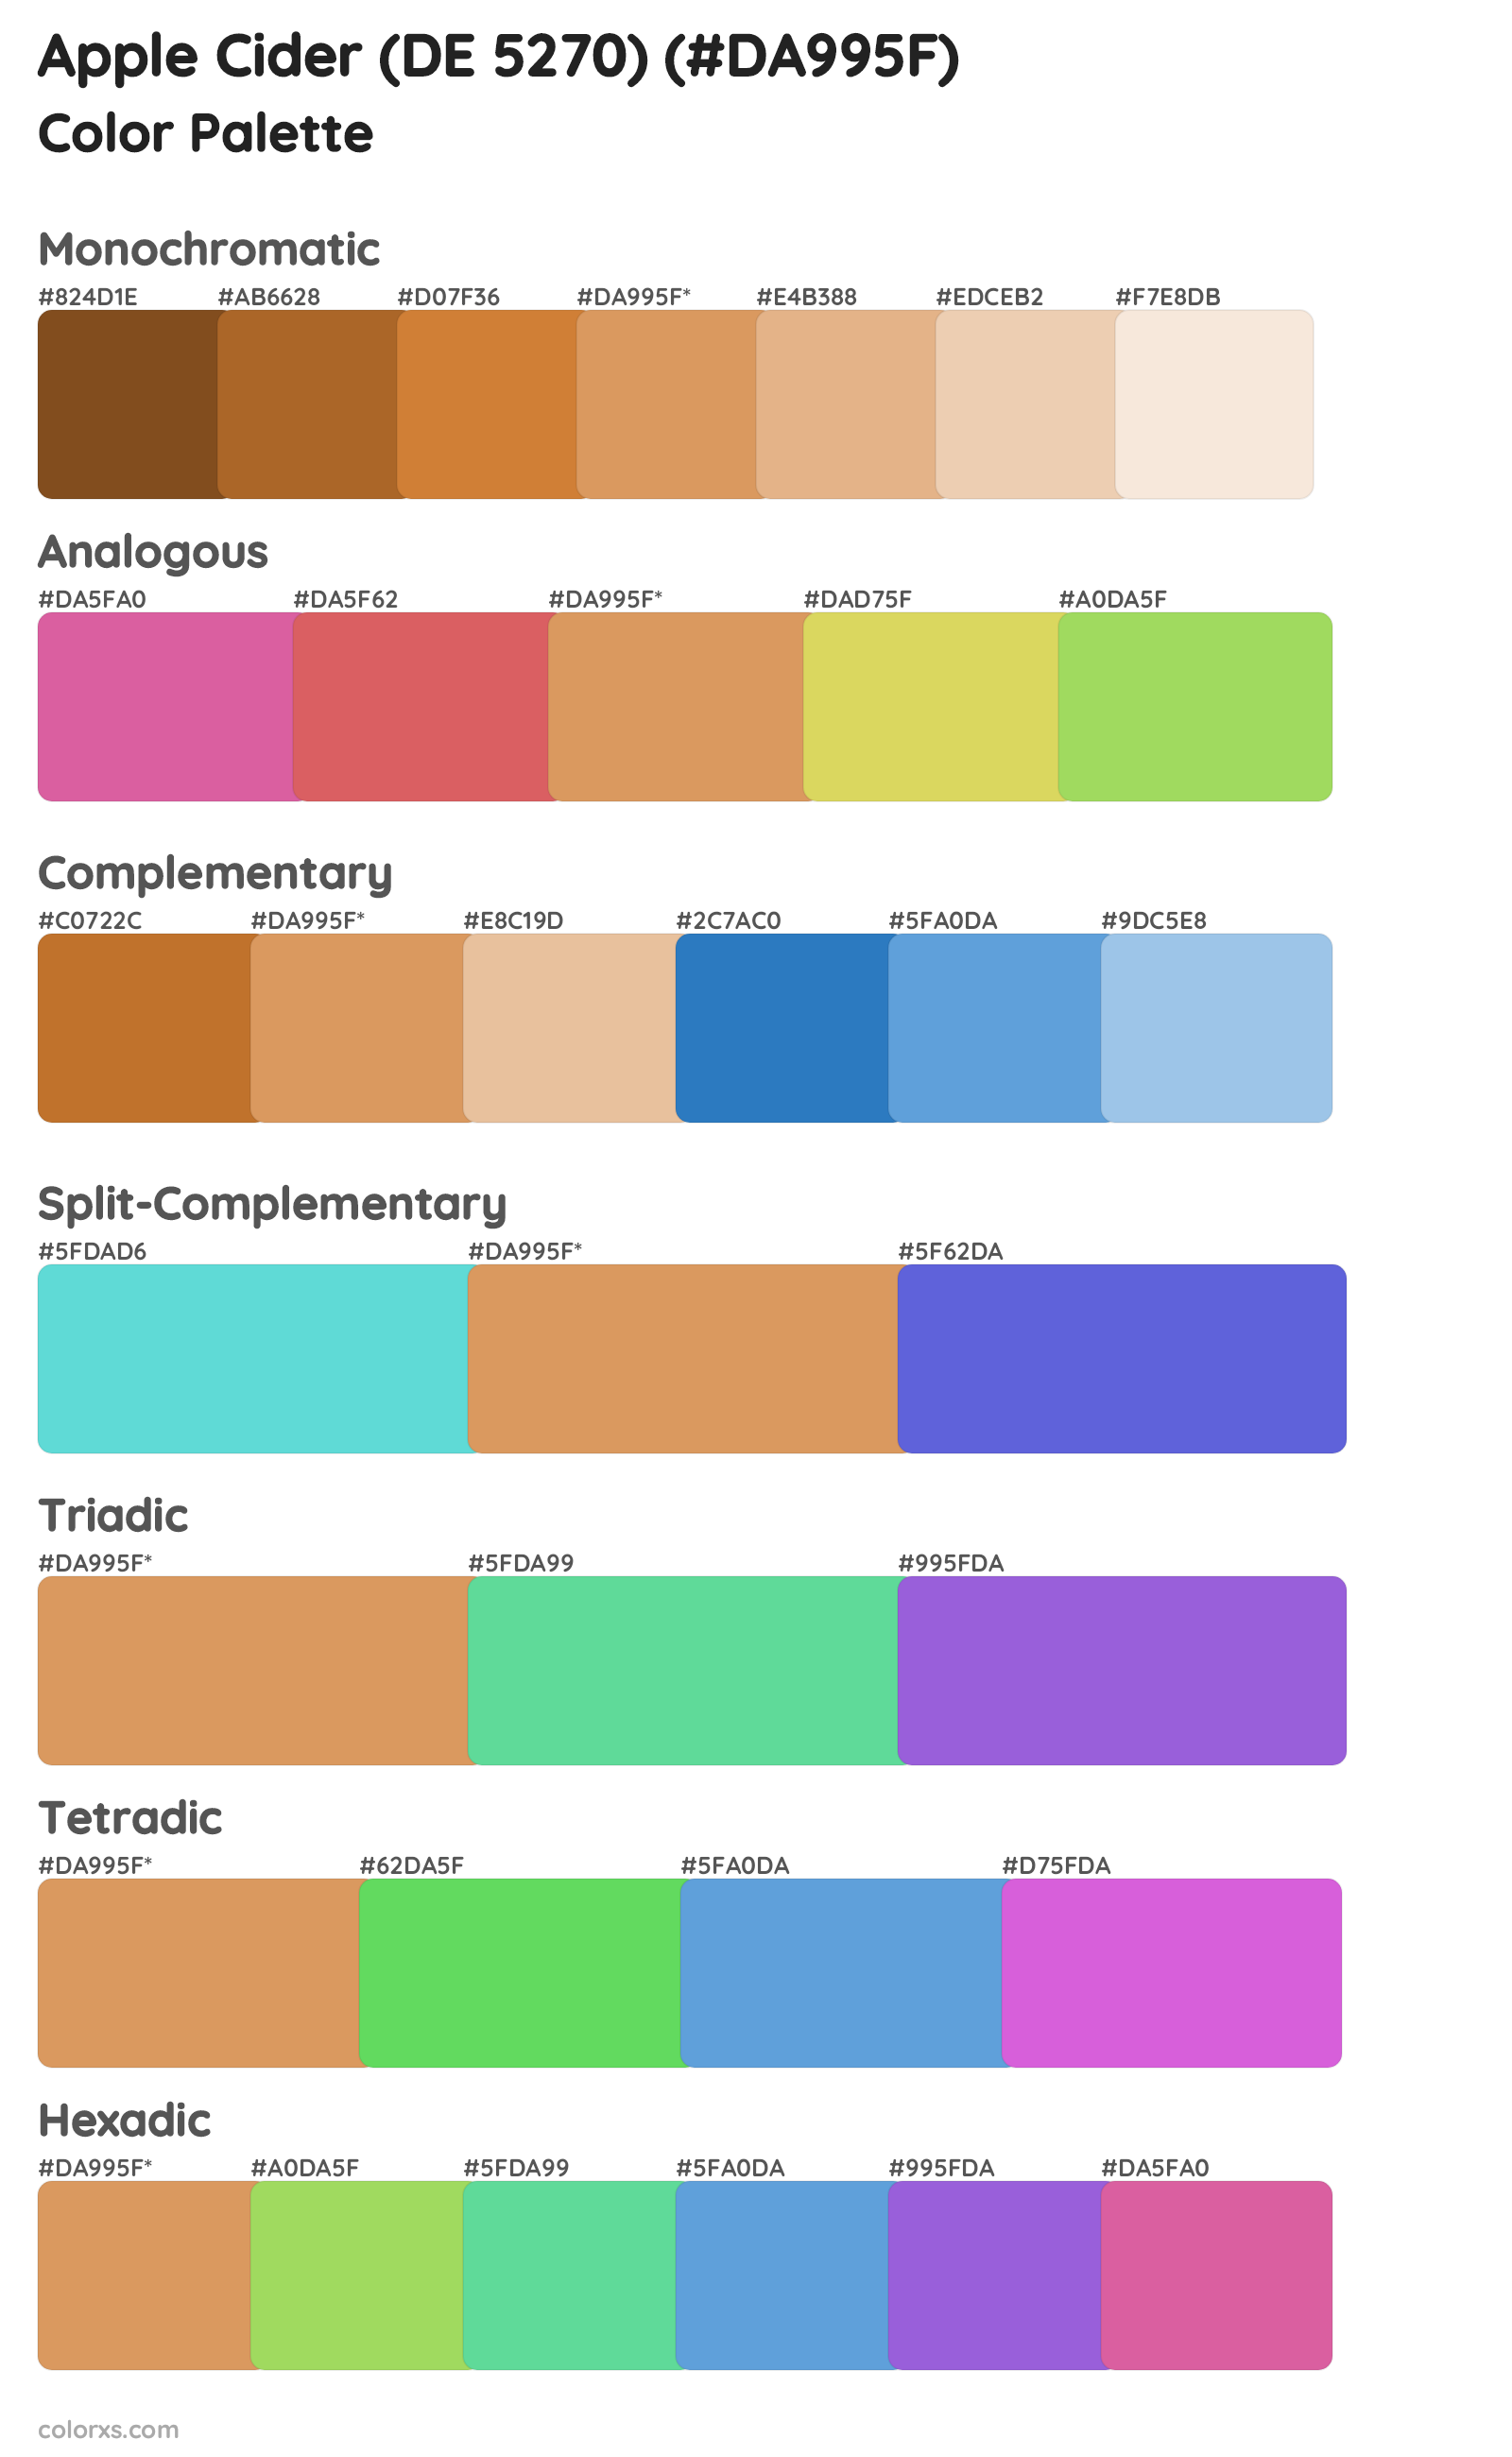 Apple Cider (DE 5270) Color Scheme Palettes